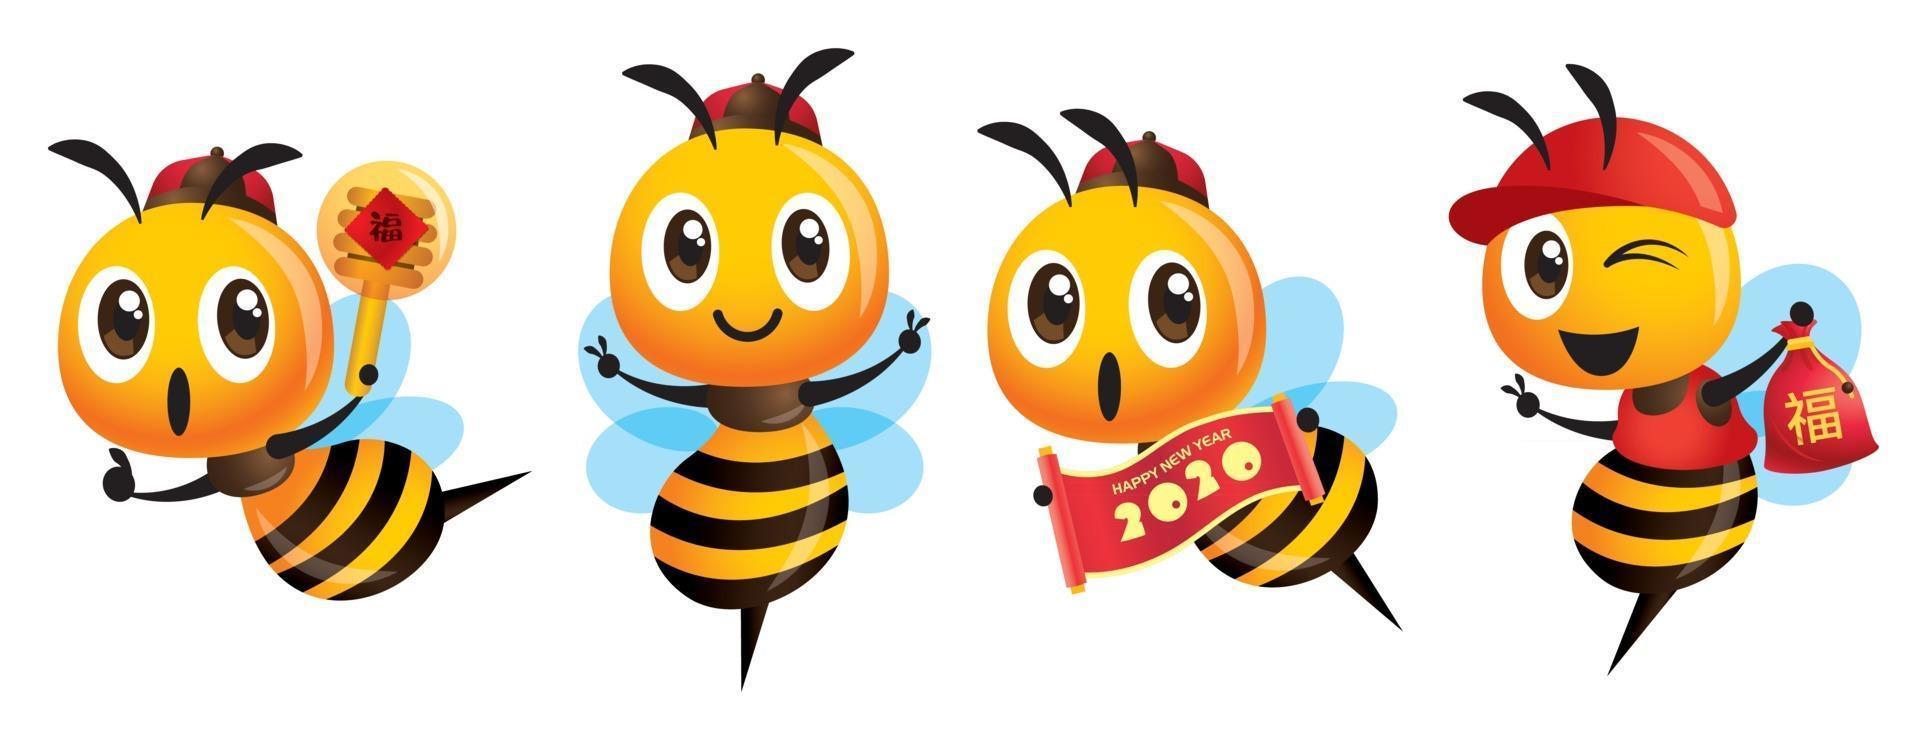 Karikatur niedliches Bienenmaskottchen gesetzt mit chinesischer Kappe, die chinesisches neues Jahr feiert vektor